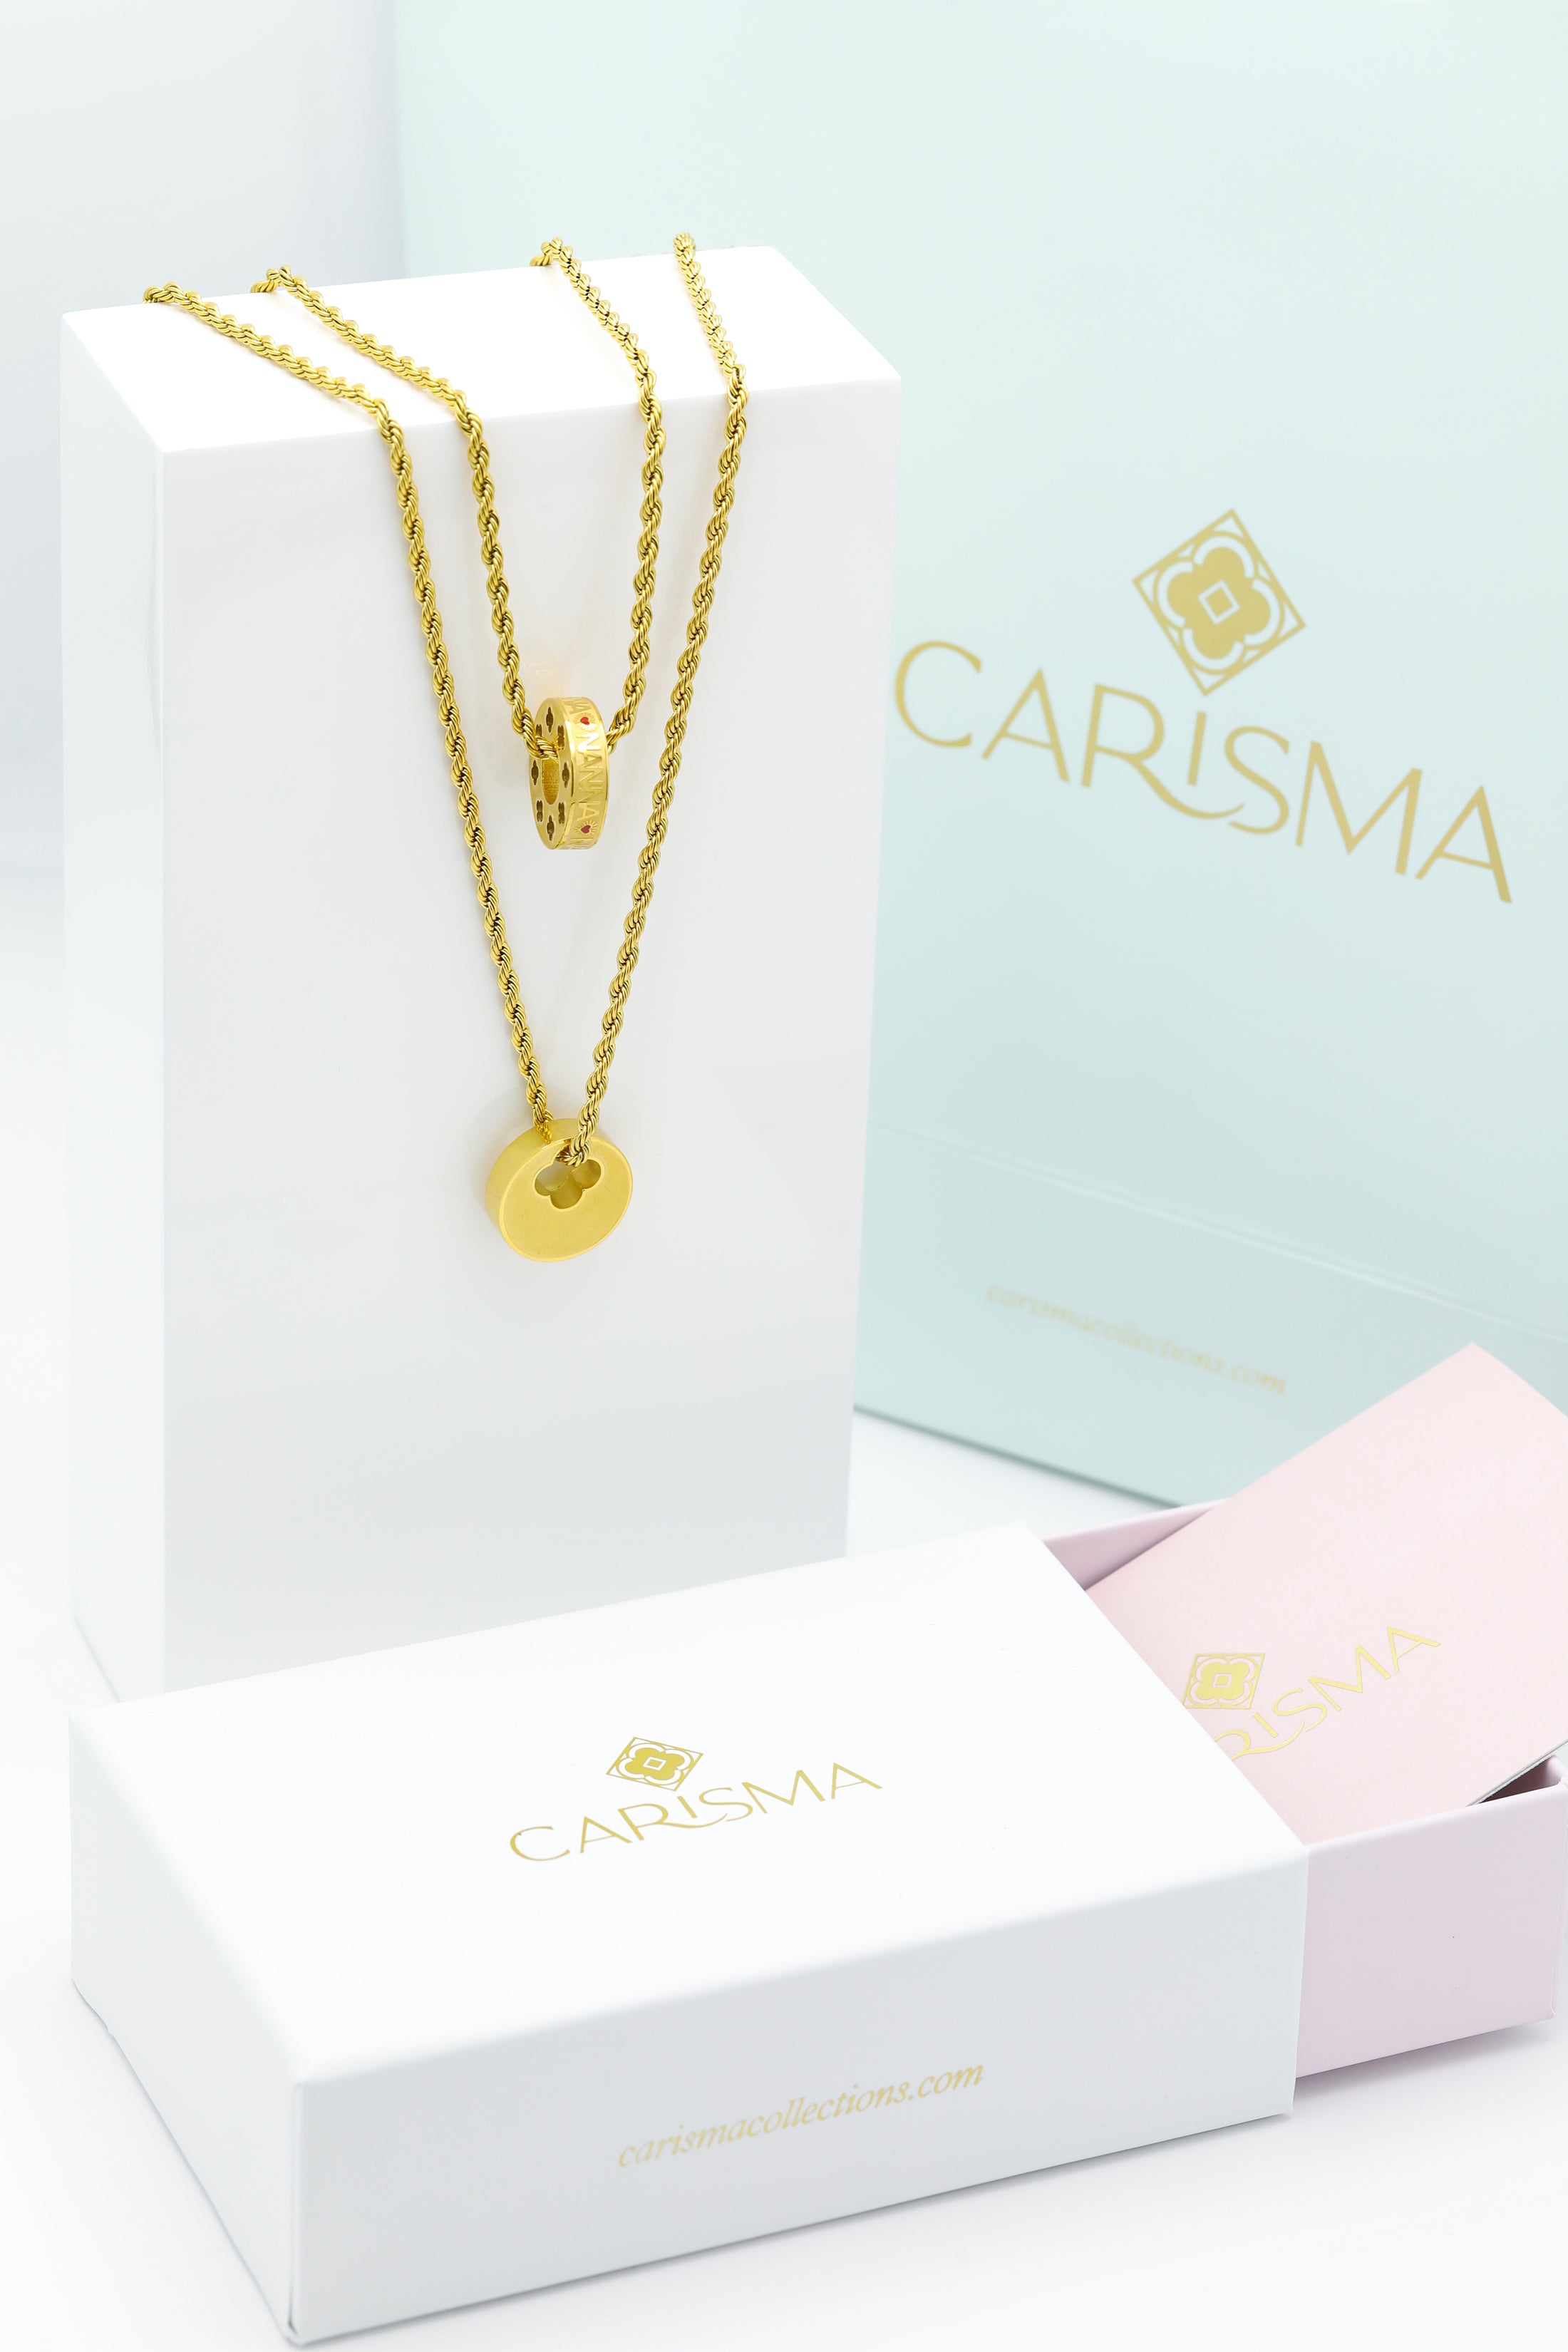 Qalbi Nanna Ring Pendant &amp; Carisma Circle Engravable Ring Pendant Gift Set